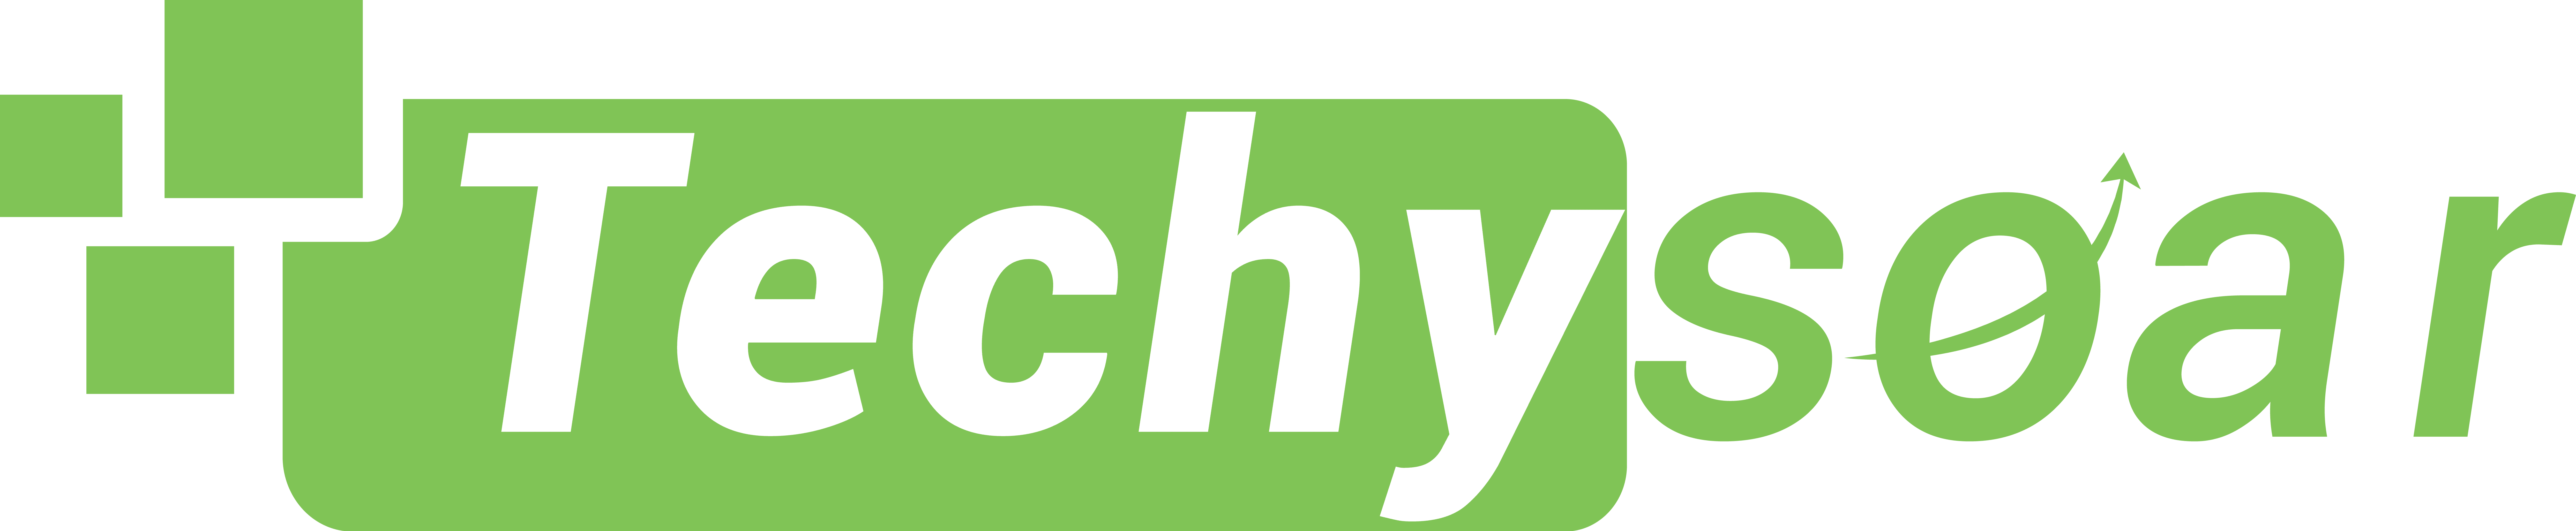 cropped techysoar logo official Techysoar